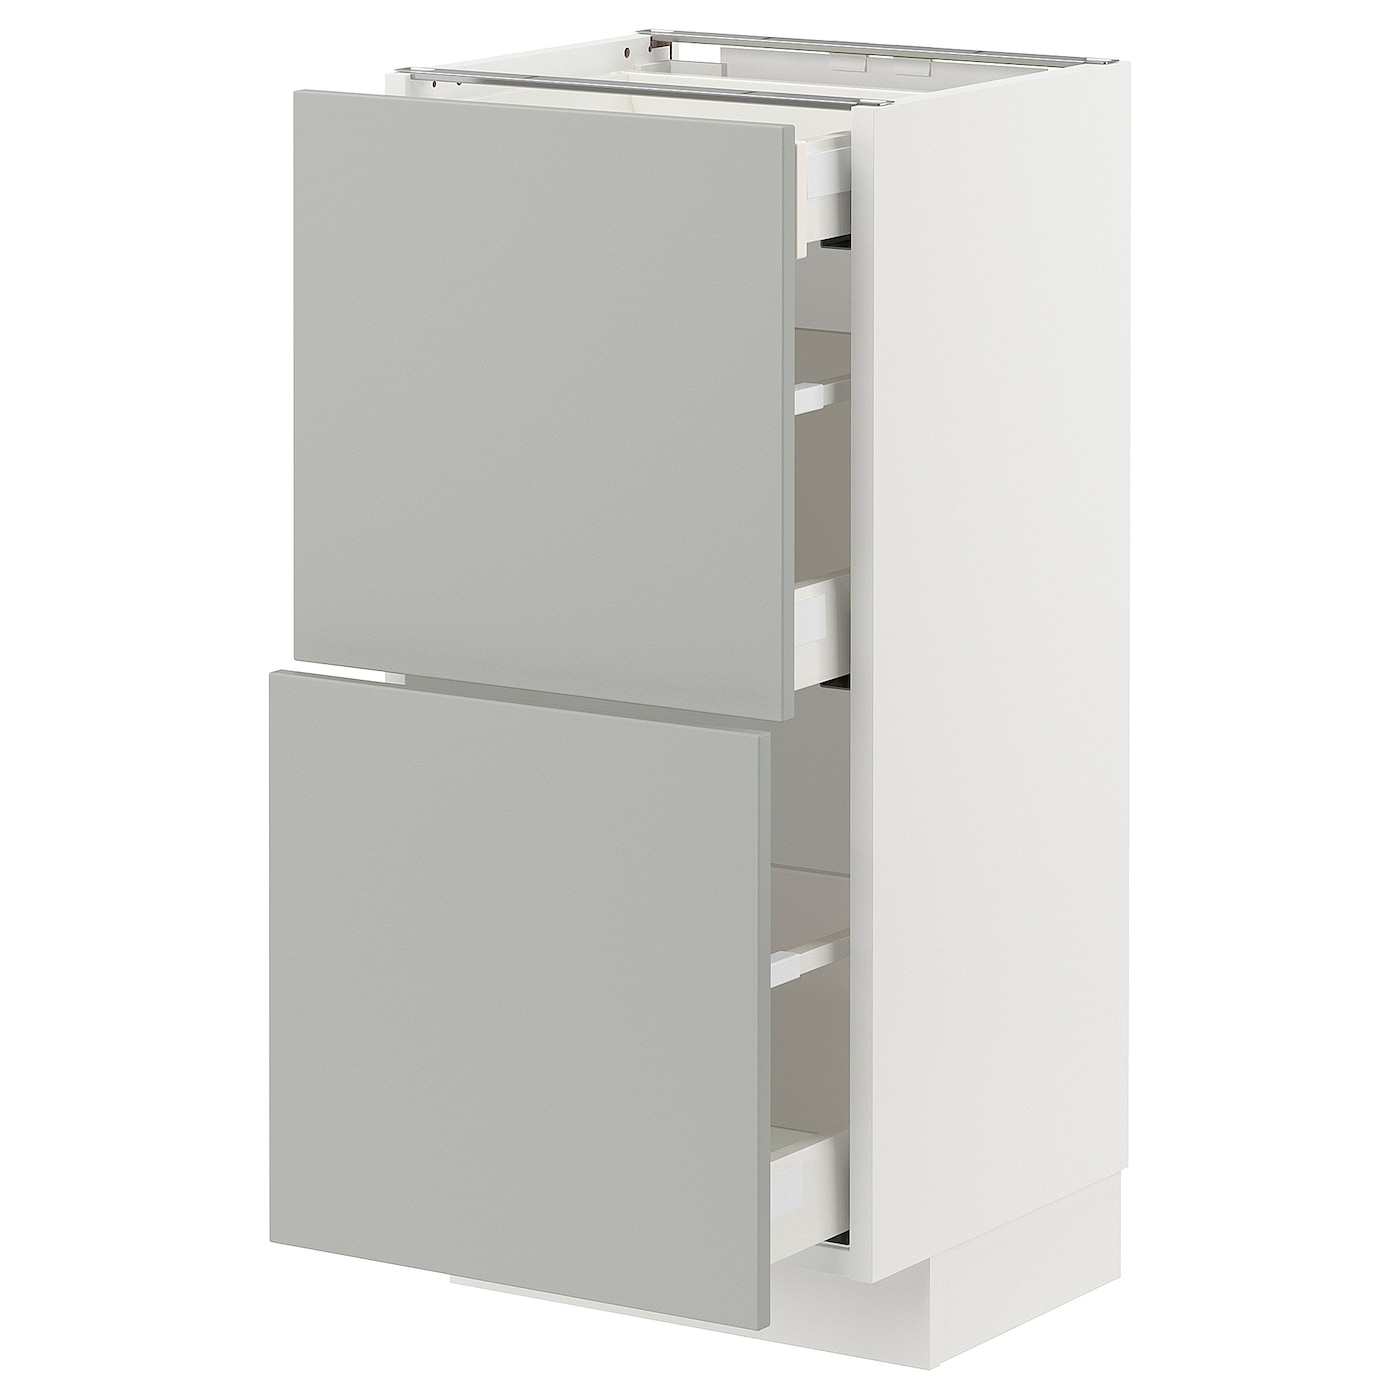 Напольный шкаф - METOD / MAXIMERA IKEA/ МЕТОД/ МАКСИМЕРА ИКЕА,  88х40 см, белый/серый